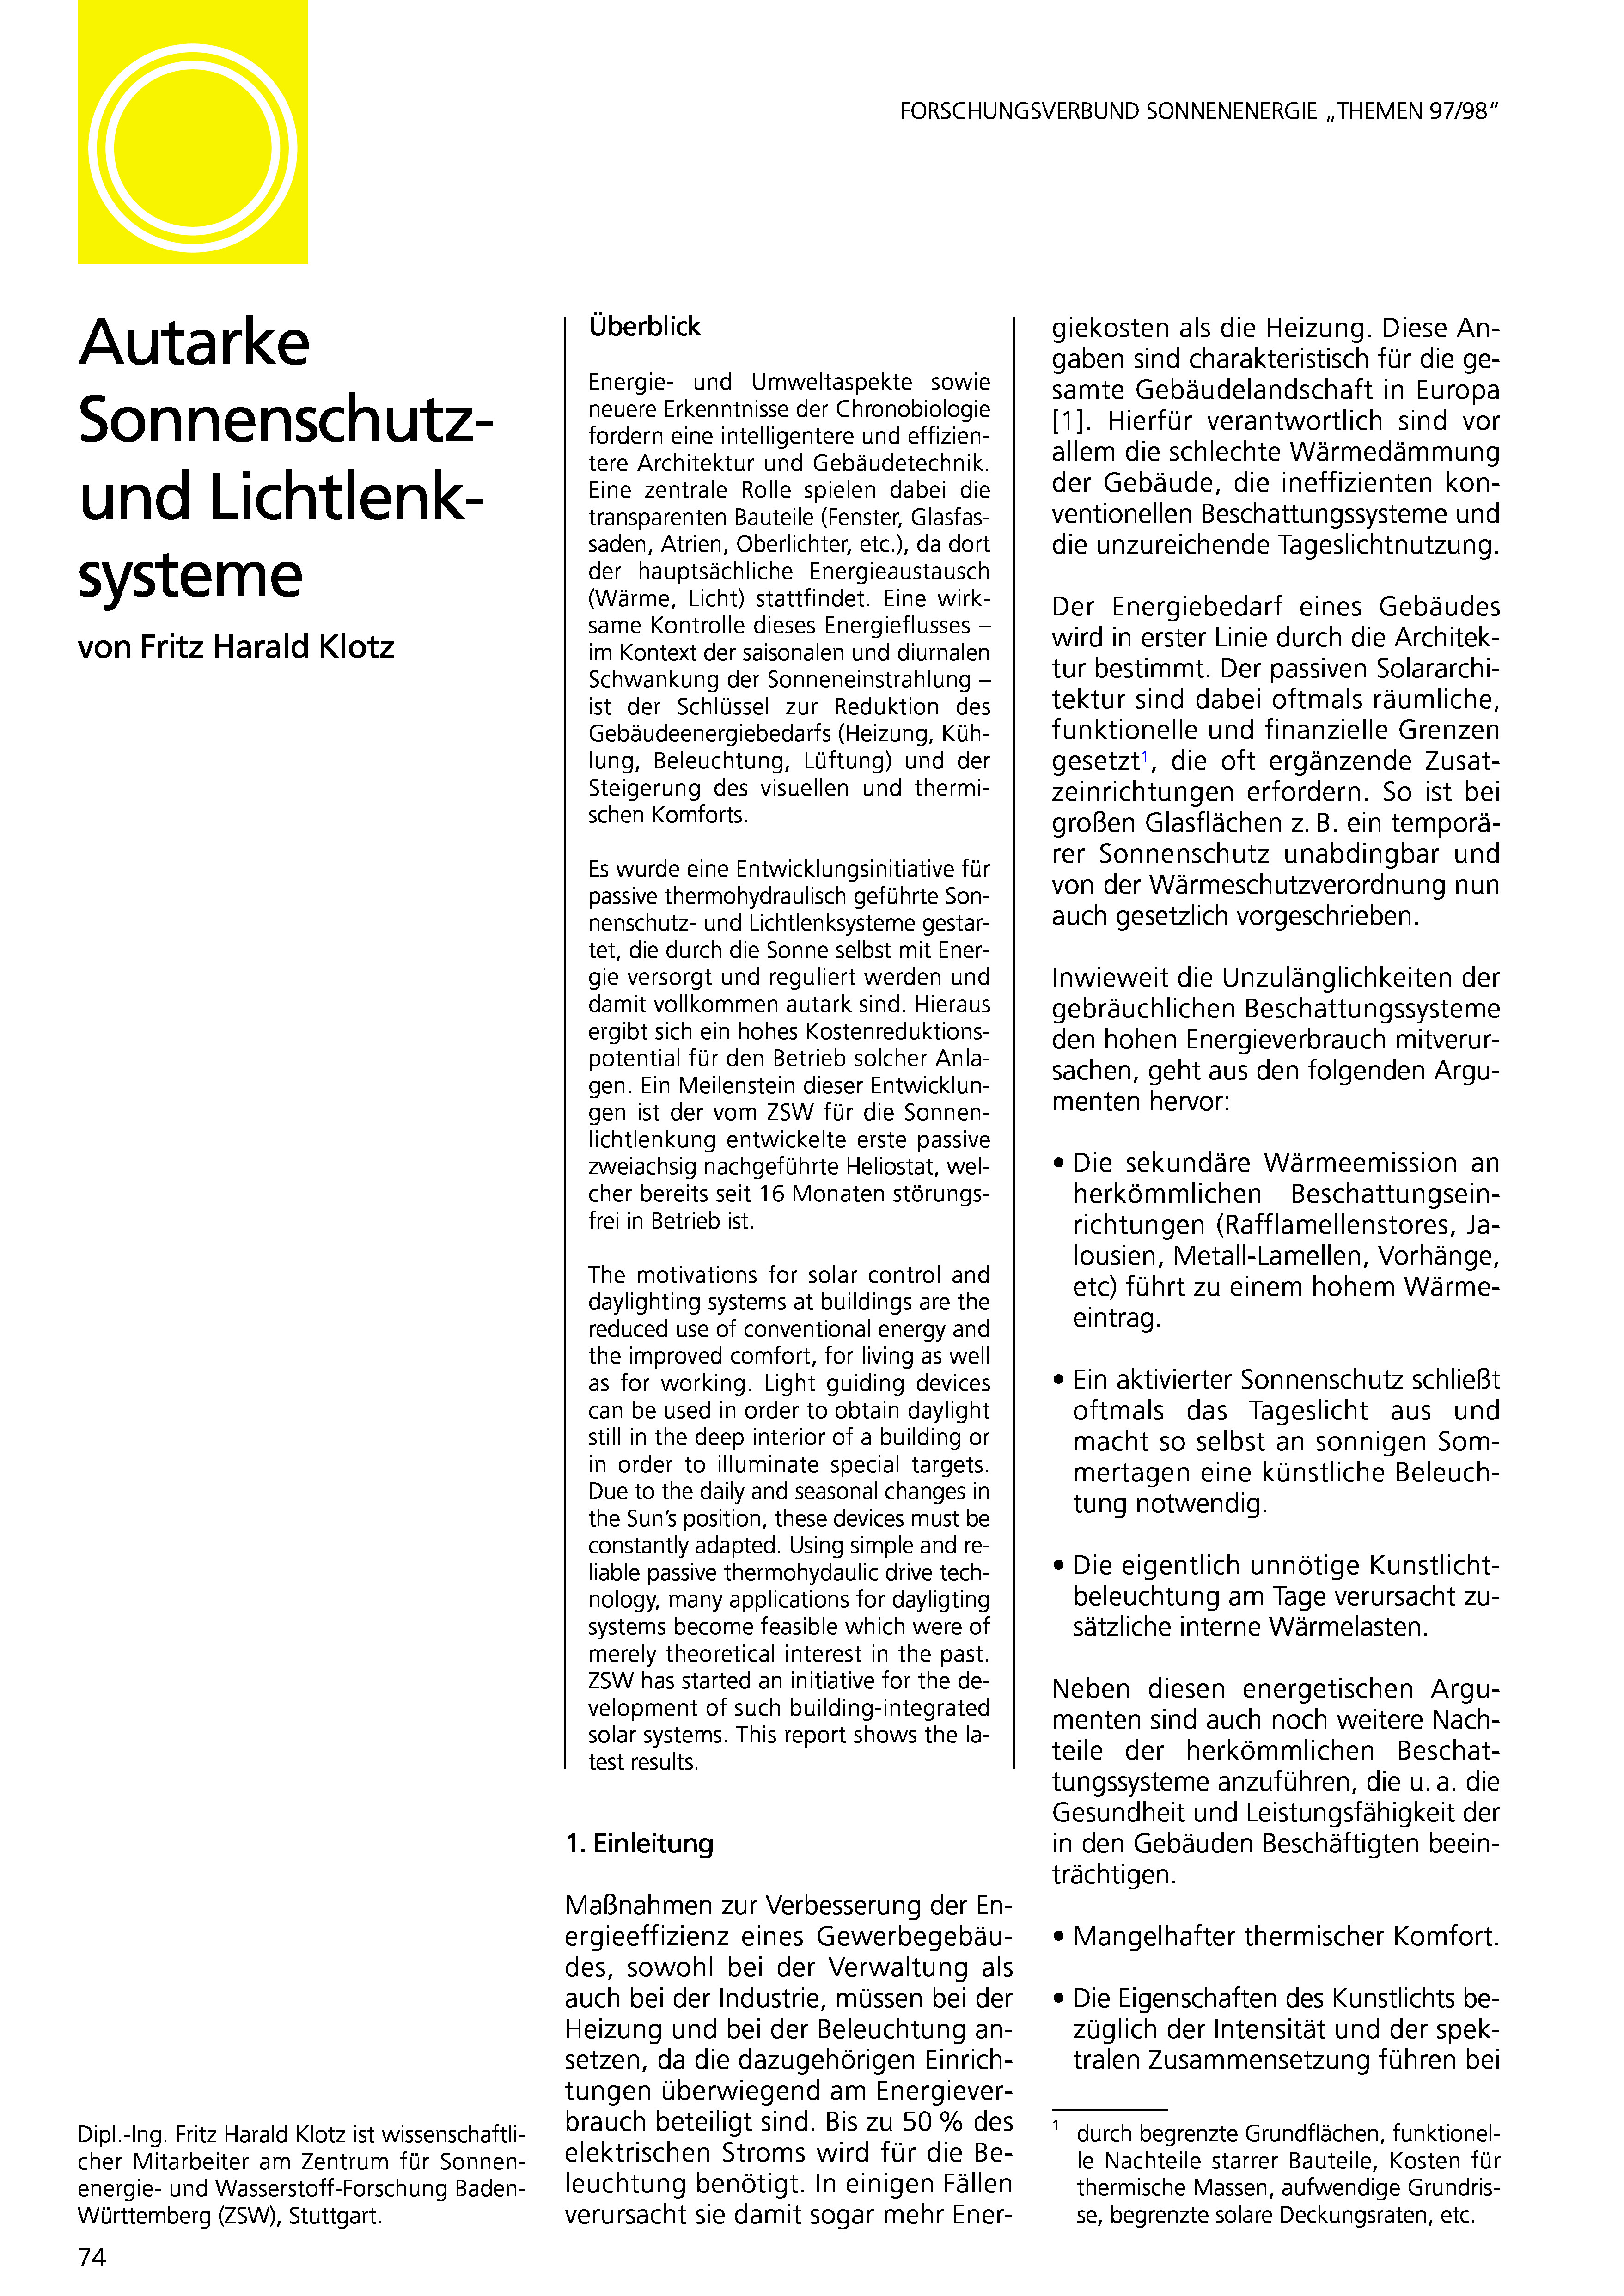 Themen 1997: Solare Gebäudetechniken